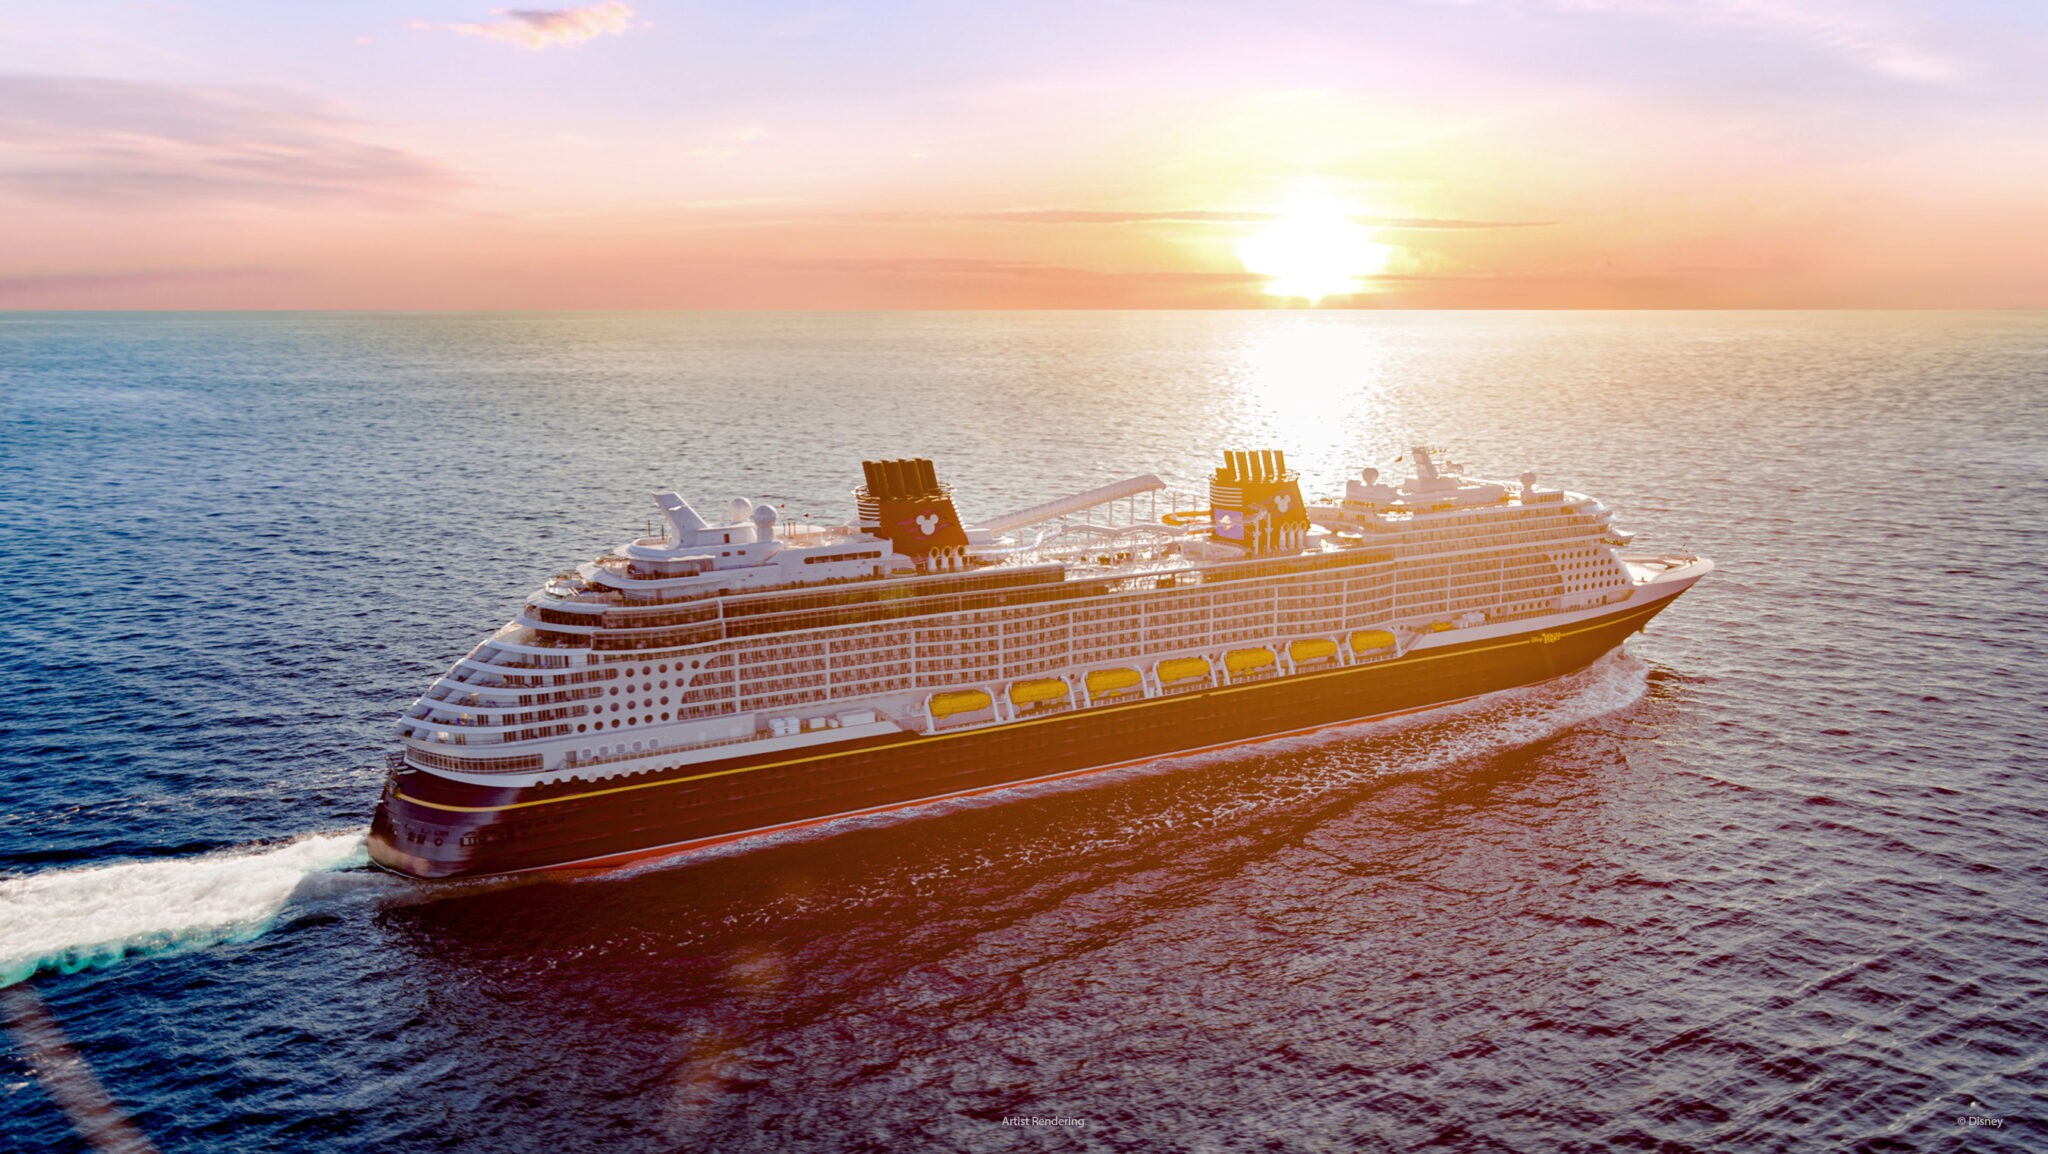 Details revealed on new Disney Wish cruise ship InPark Magazine